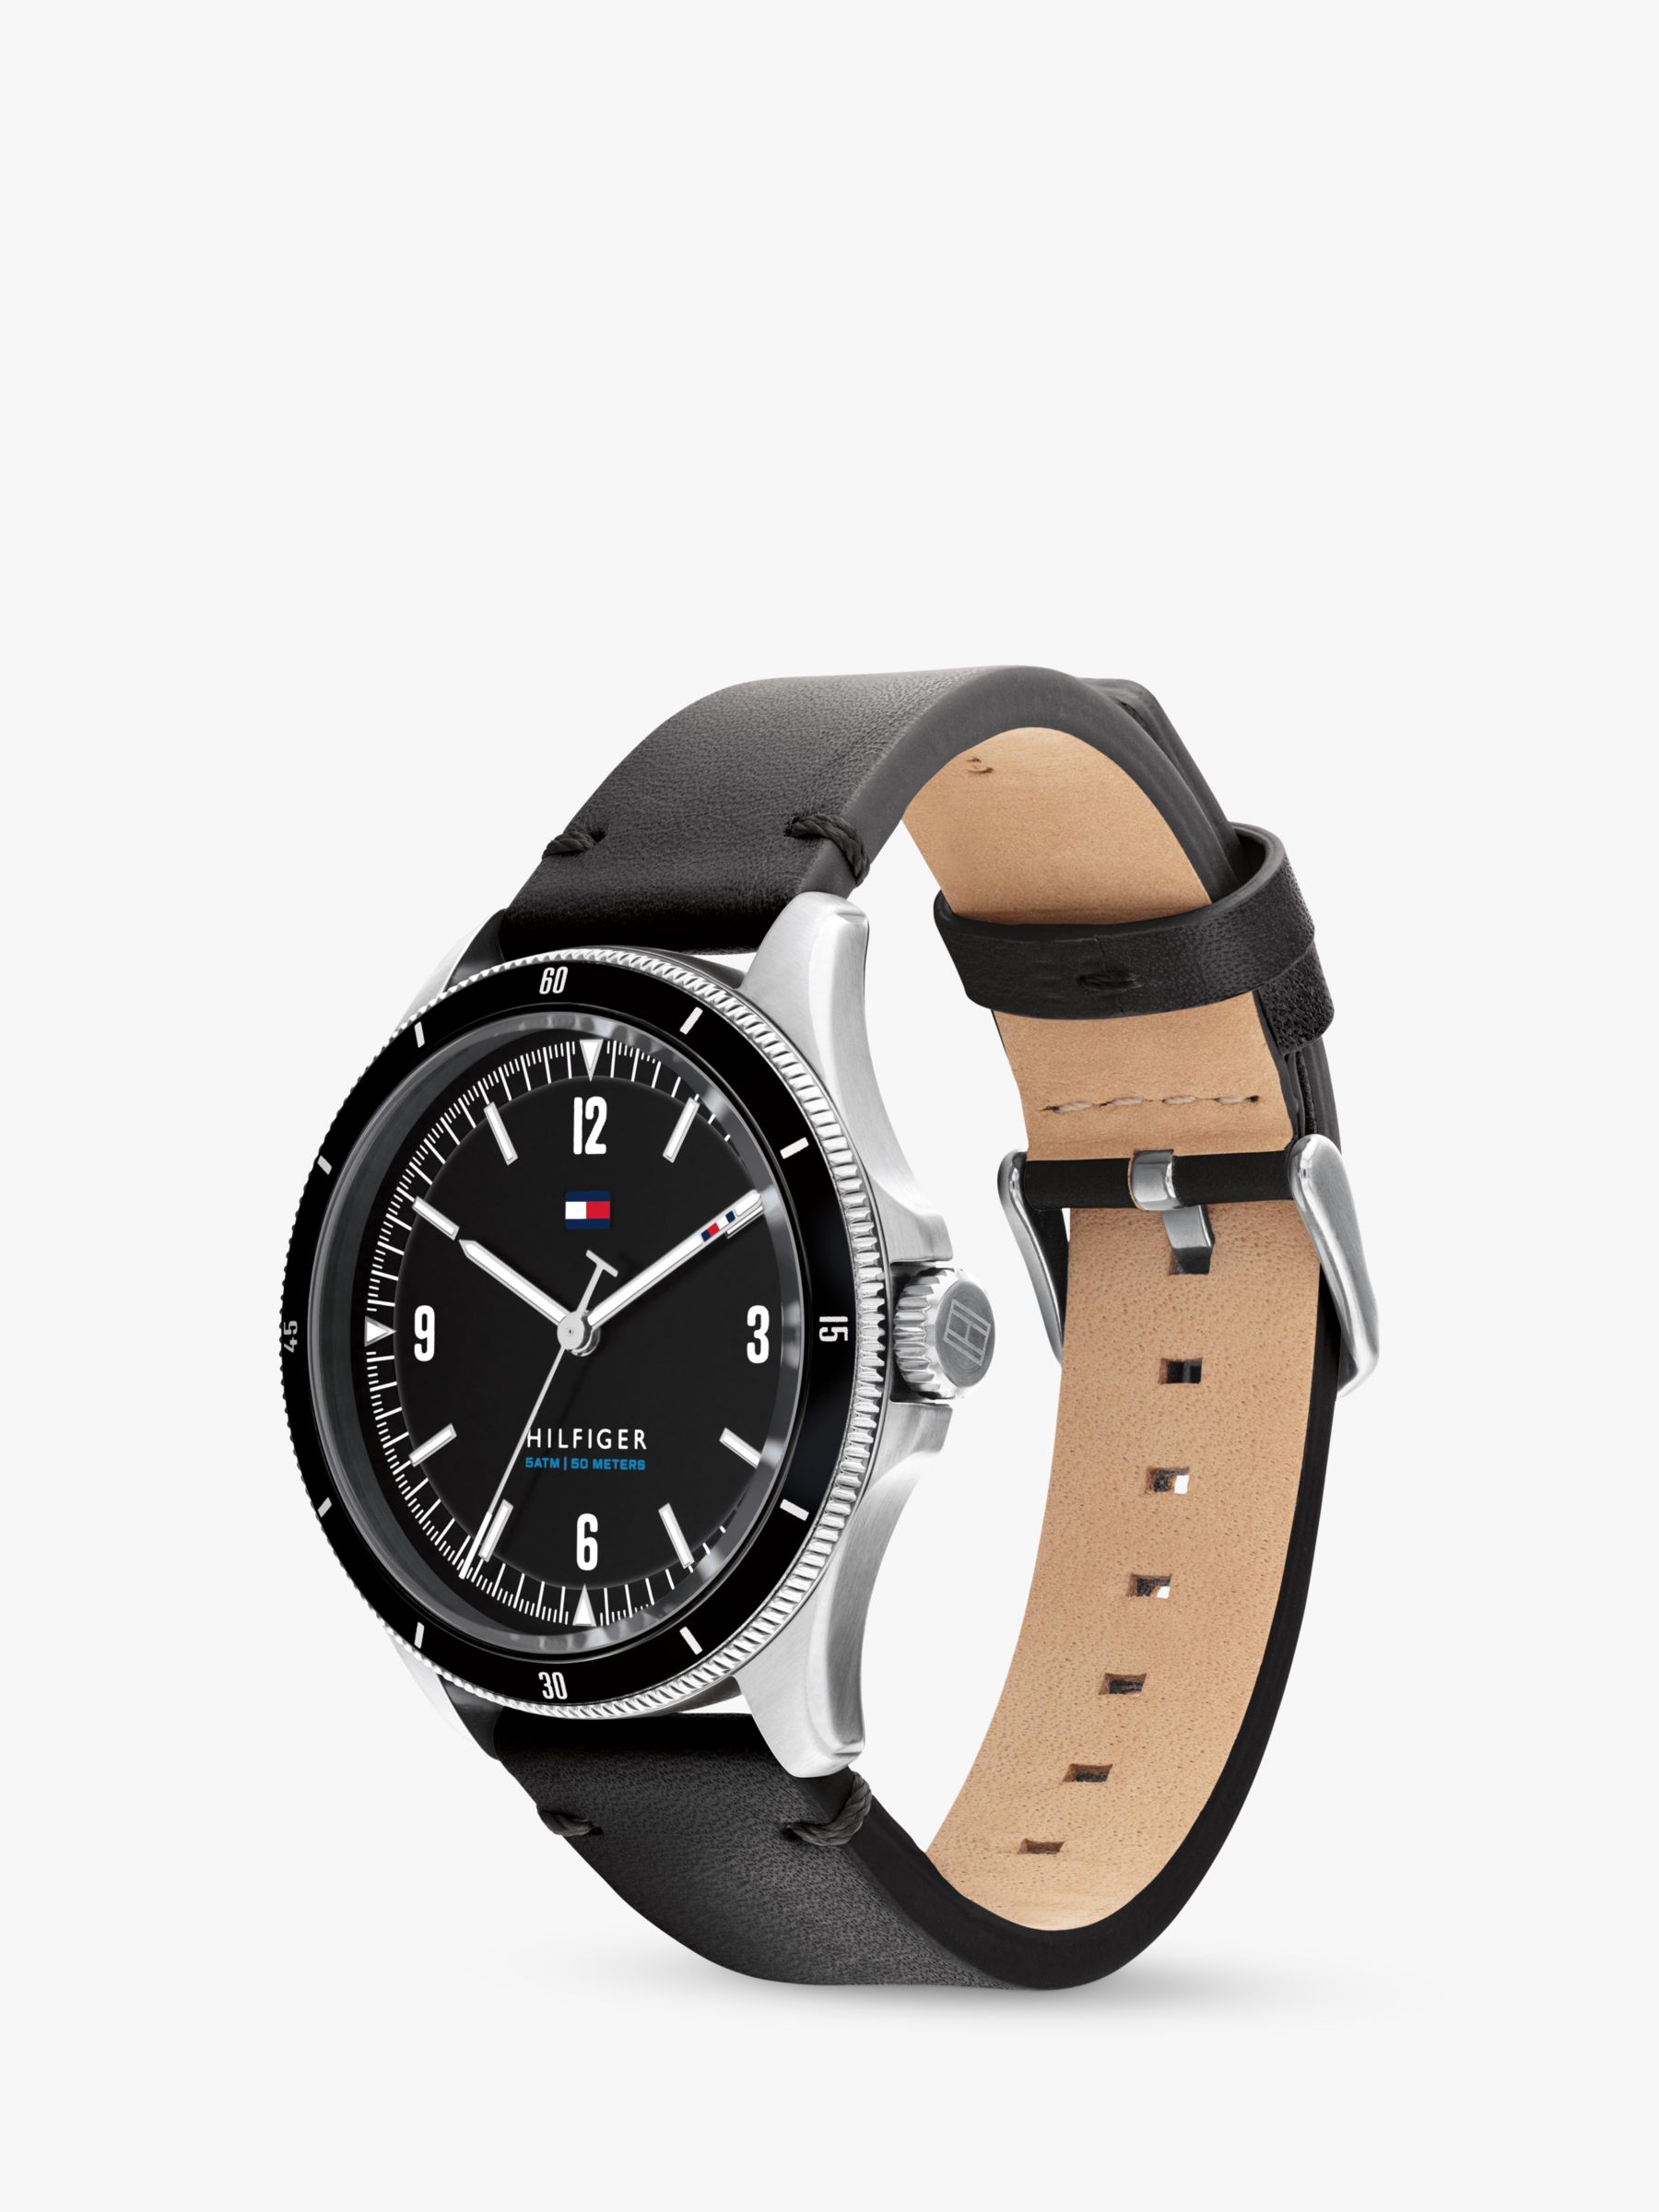 Tommy Hilfiger Men's Maverick Leather Strap Watch, Black 1791904 at ...